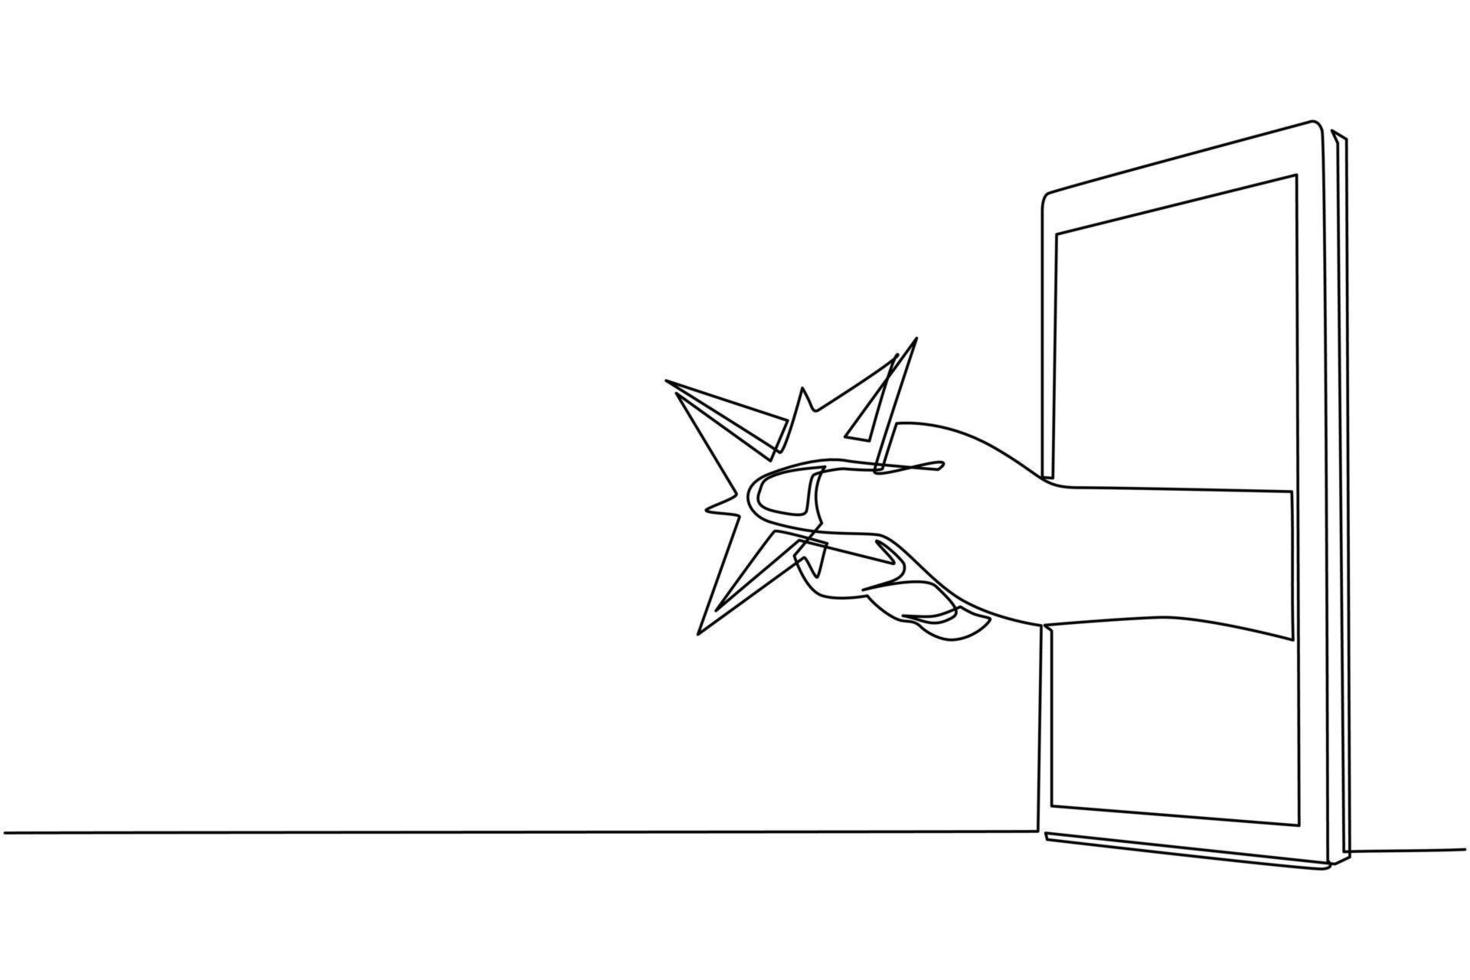 mano de dibujo de una línea continua que sostiene la cuchilla shuriken a través del teléfono móvil. concepto de videojuegos ninja, e-sport, aplicación de entretenimiento para smartphones. gráfico vectorial de diseño de dibujo de una sola línea vector